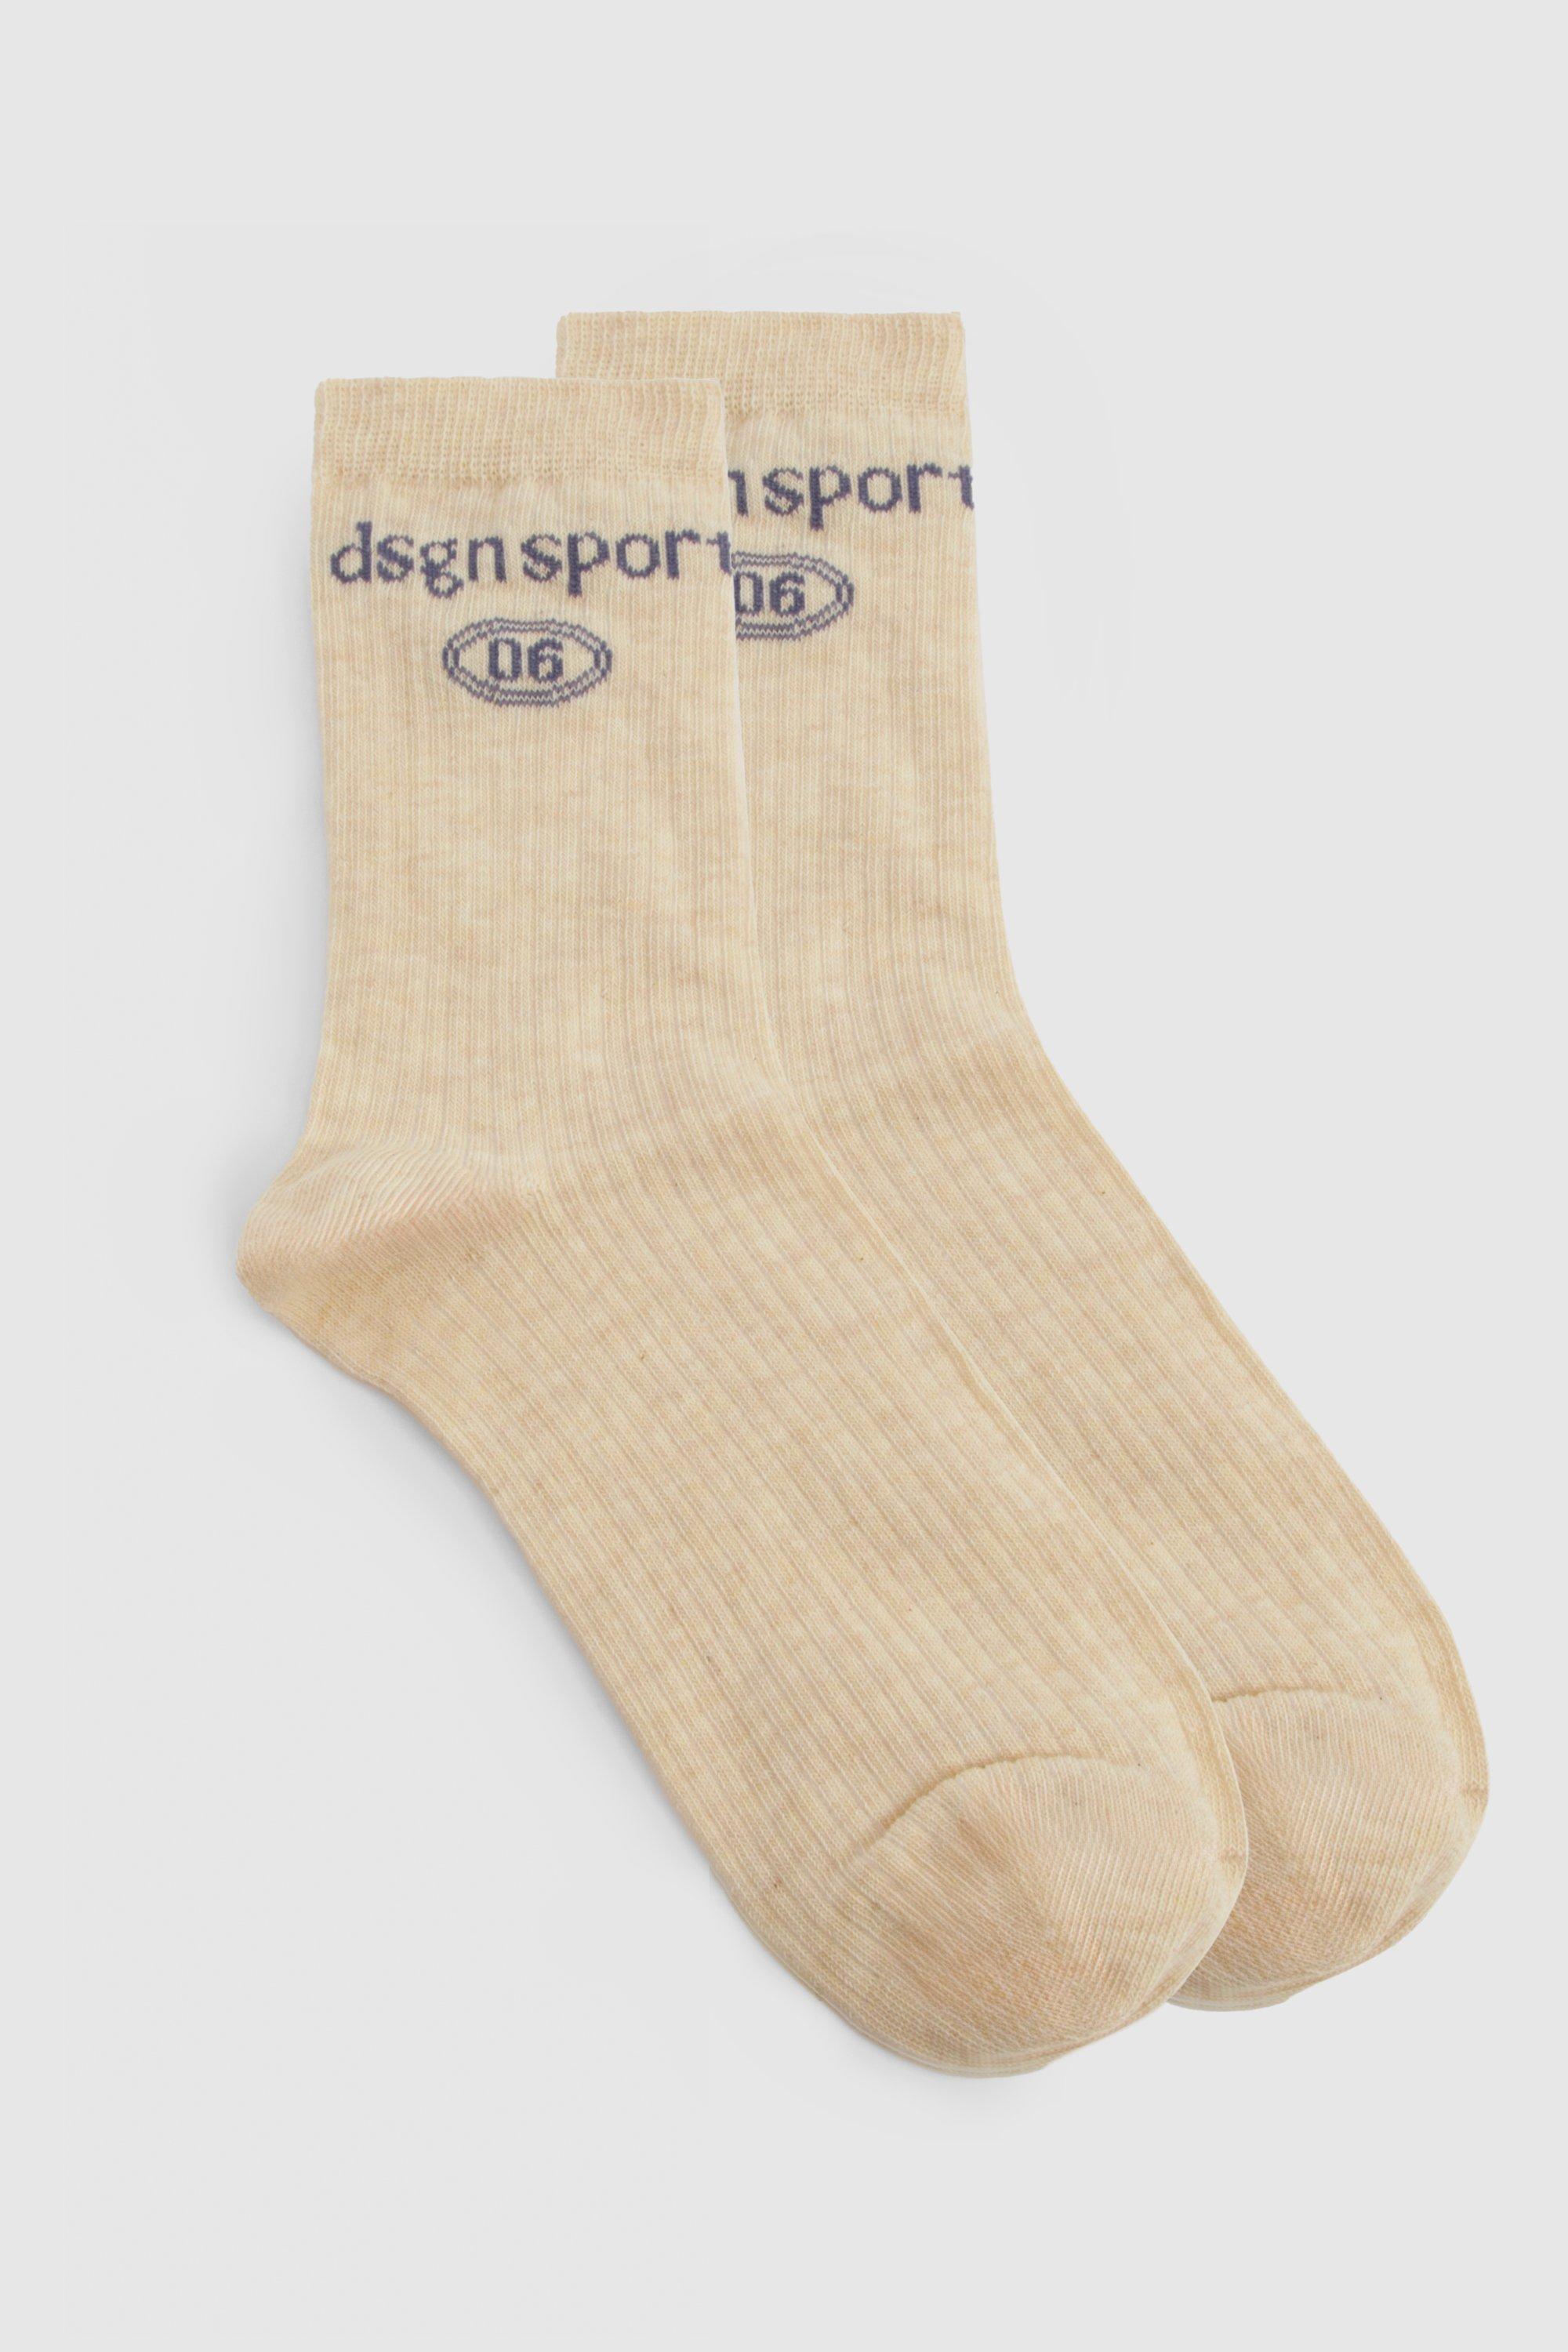 Image of Dsgn Sport Single Sock, Beige